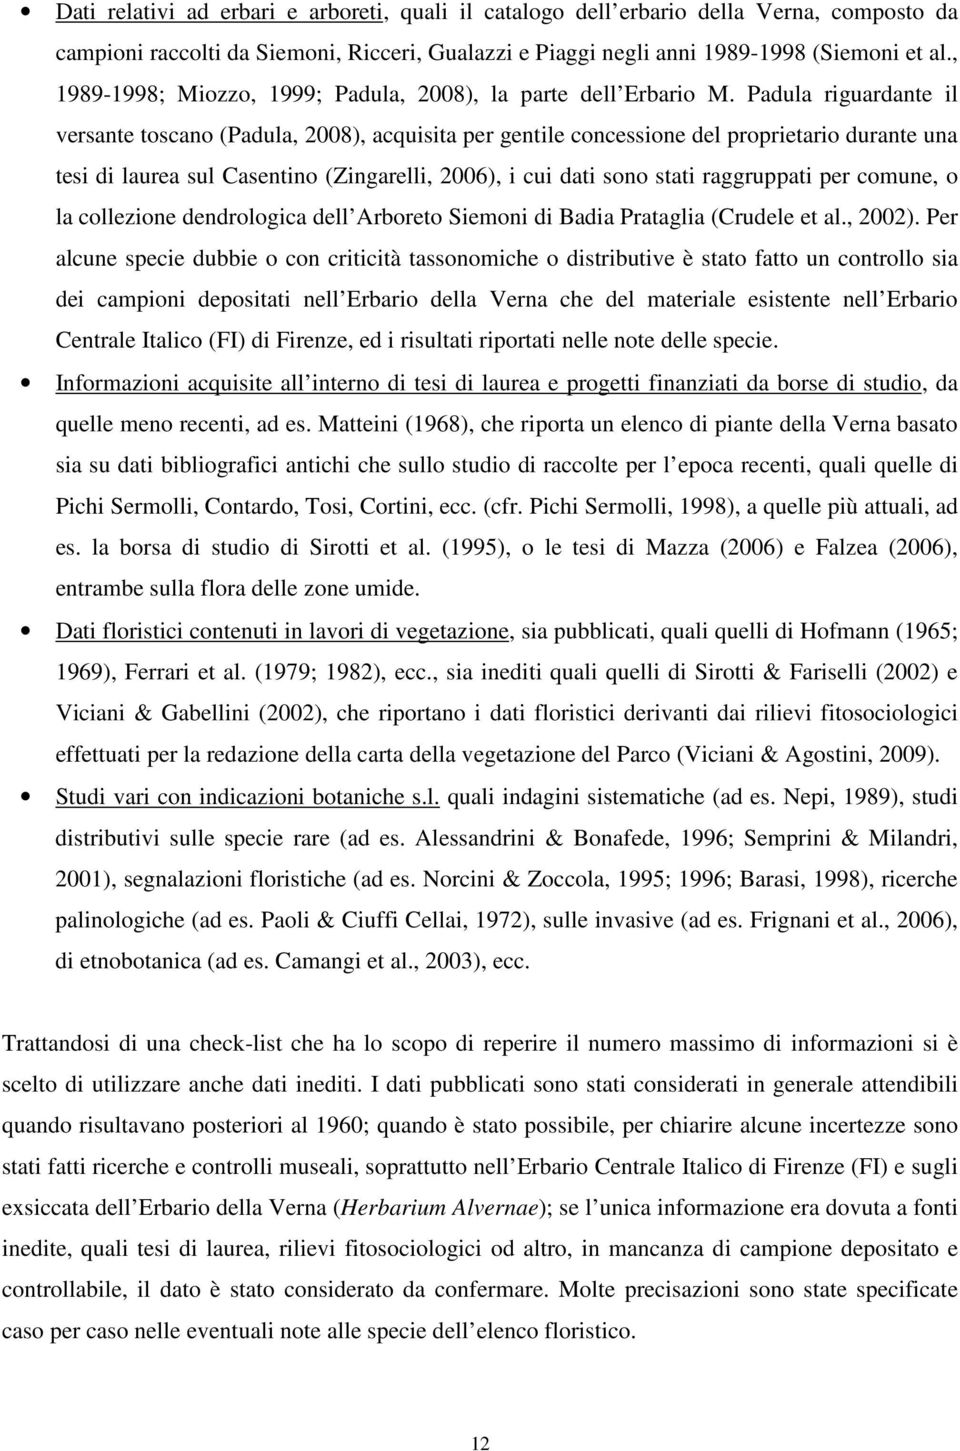 Padula riguardante il versante toscano (Padula, 2008), acquisita per gentile concessione del proprietario durante una tesi di laurea sul Casentino (Zingarelli, 2006), i cui dati sono stati